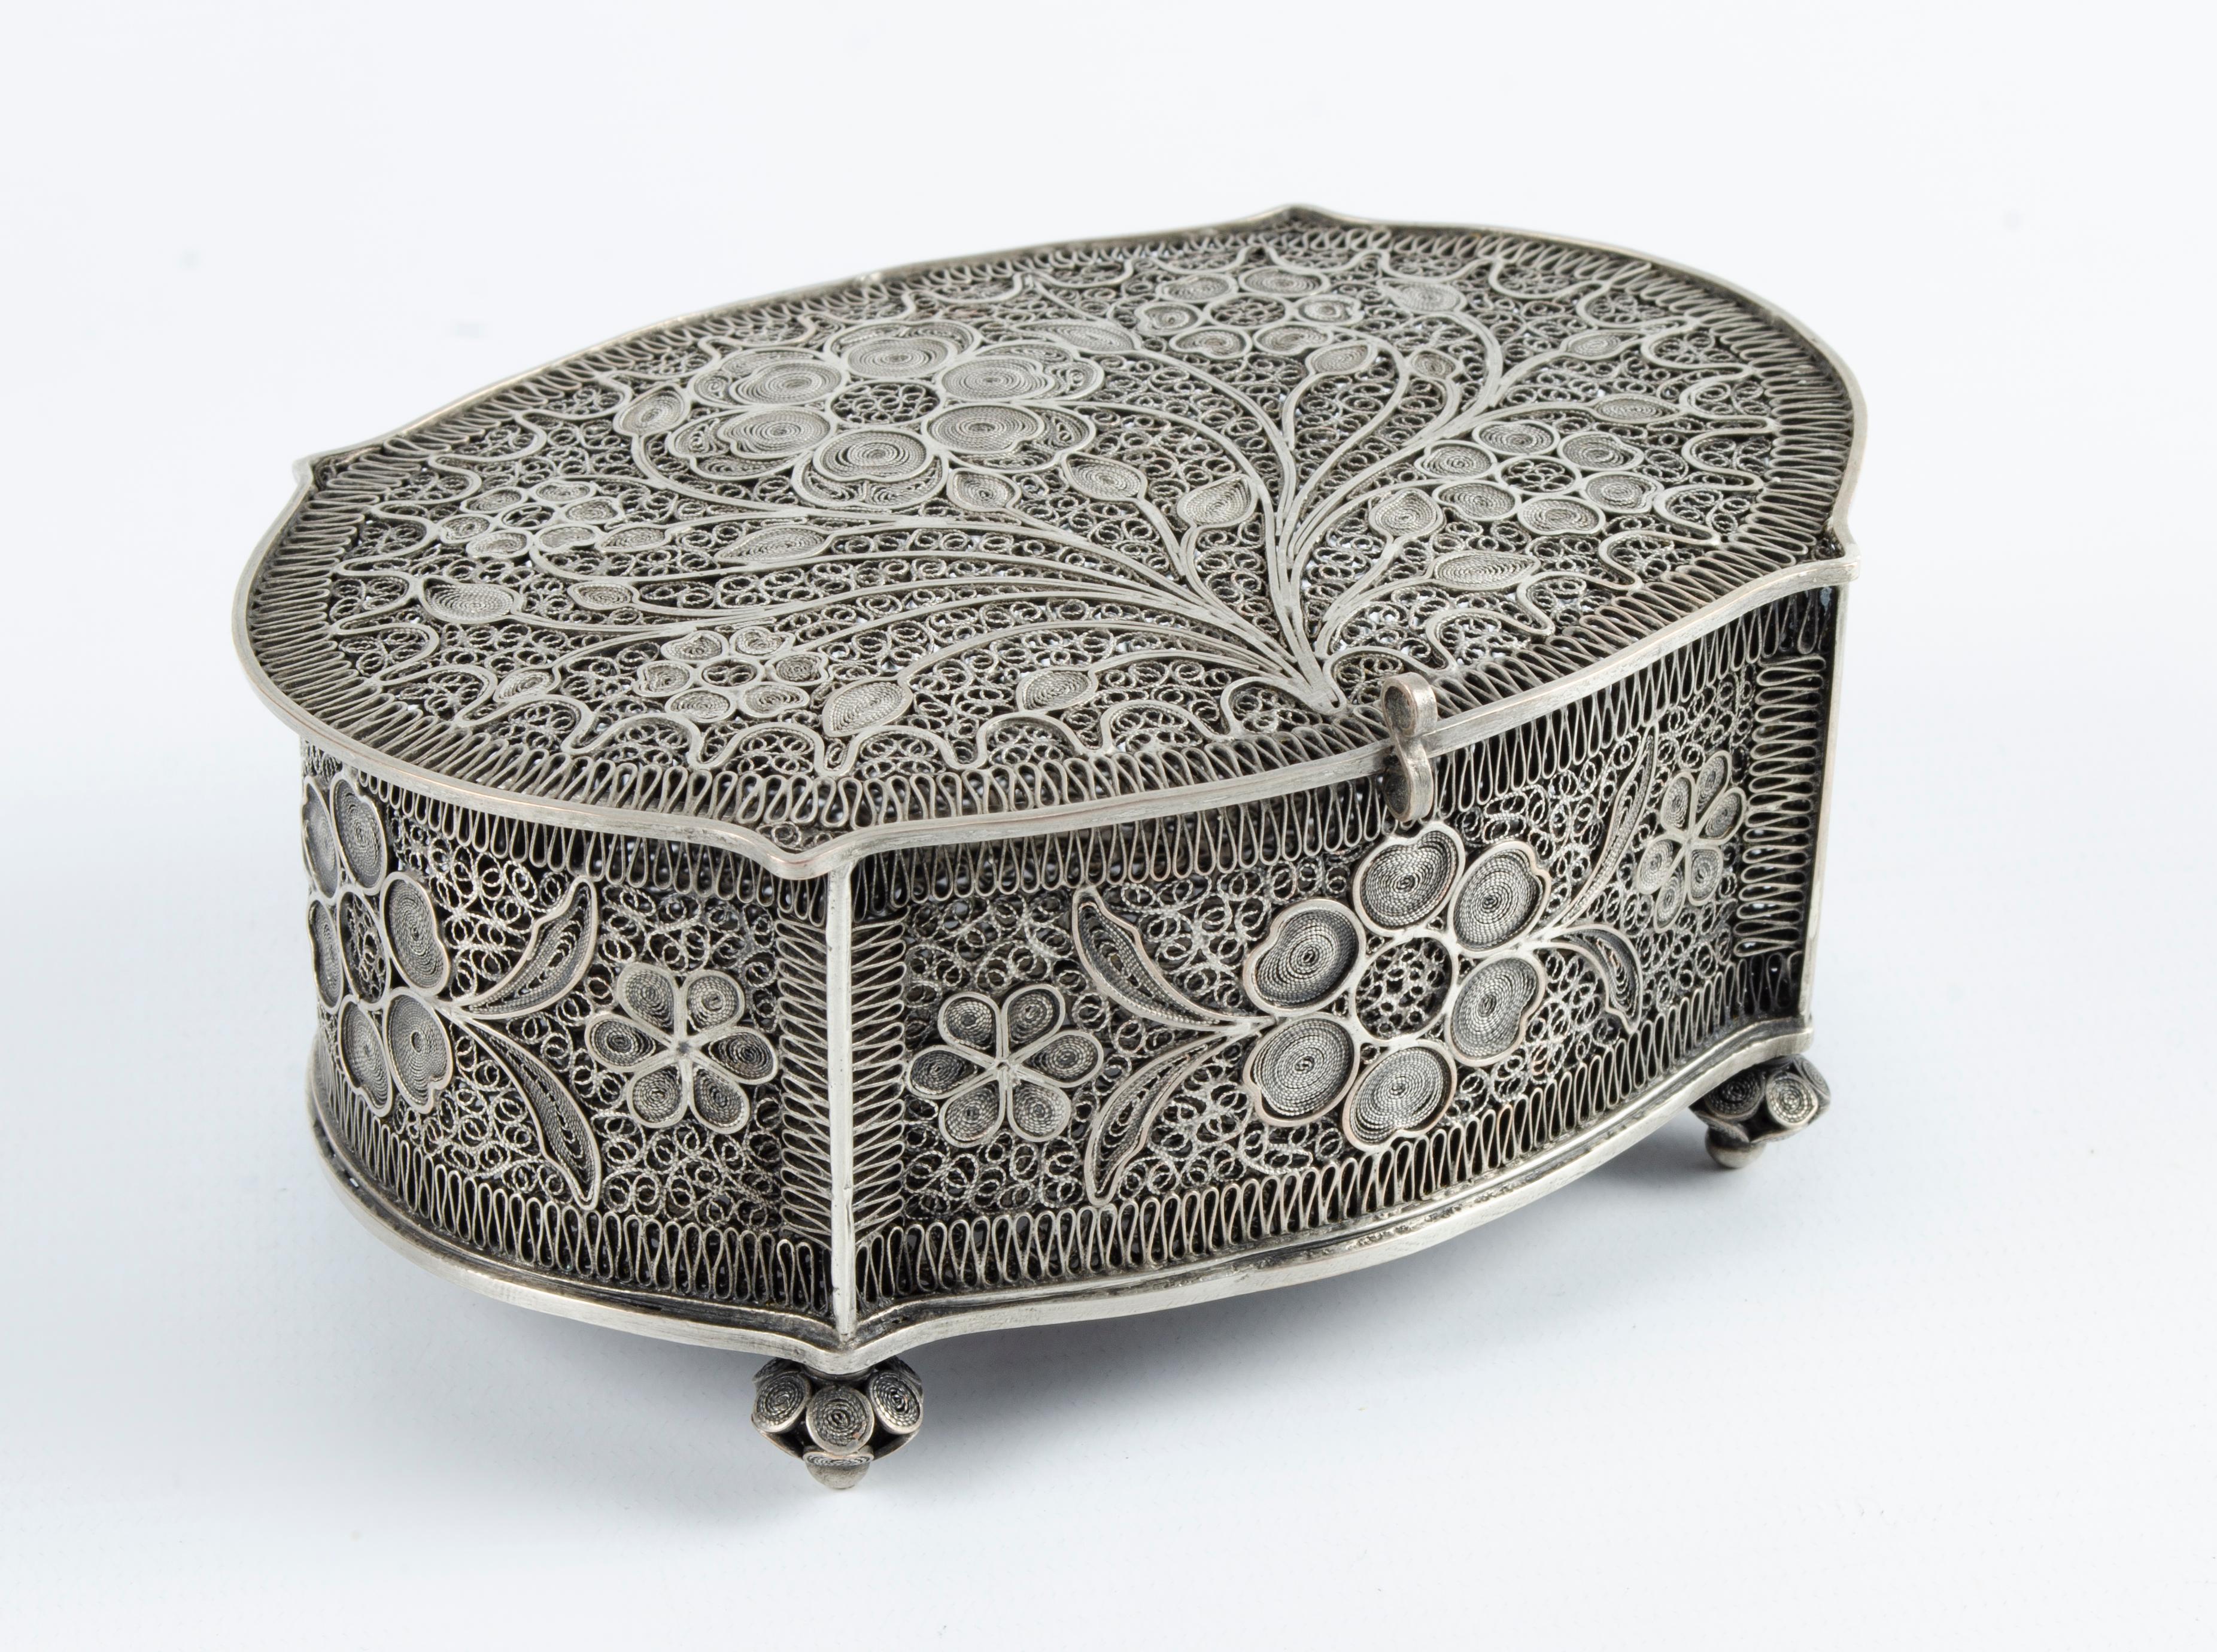 Silver Filigree jewelry box
Floral design
solid silver
perfect condition
Origin France Circa 1940.